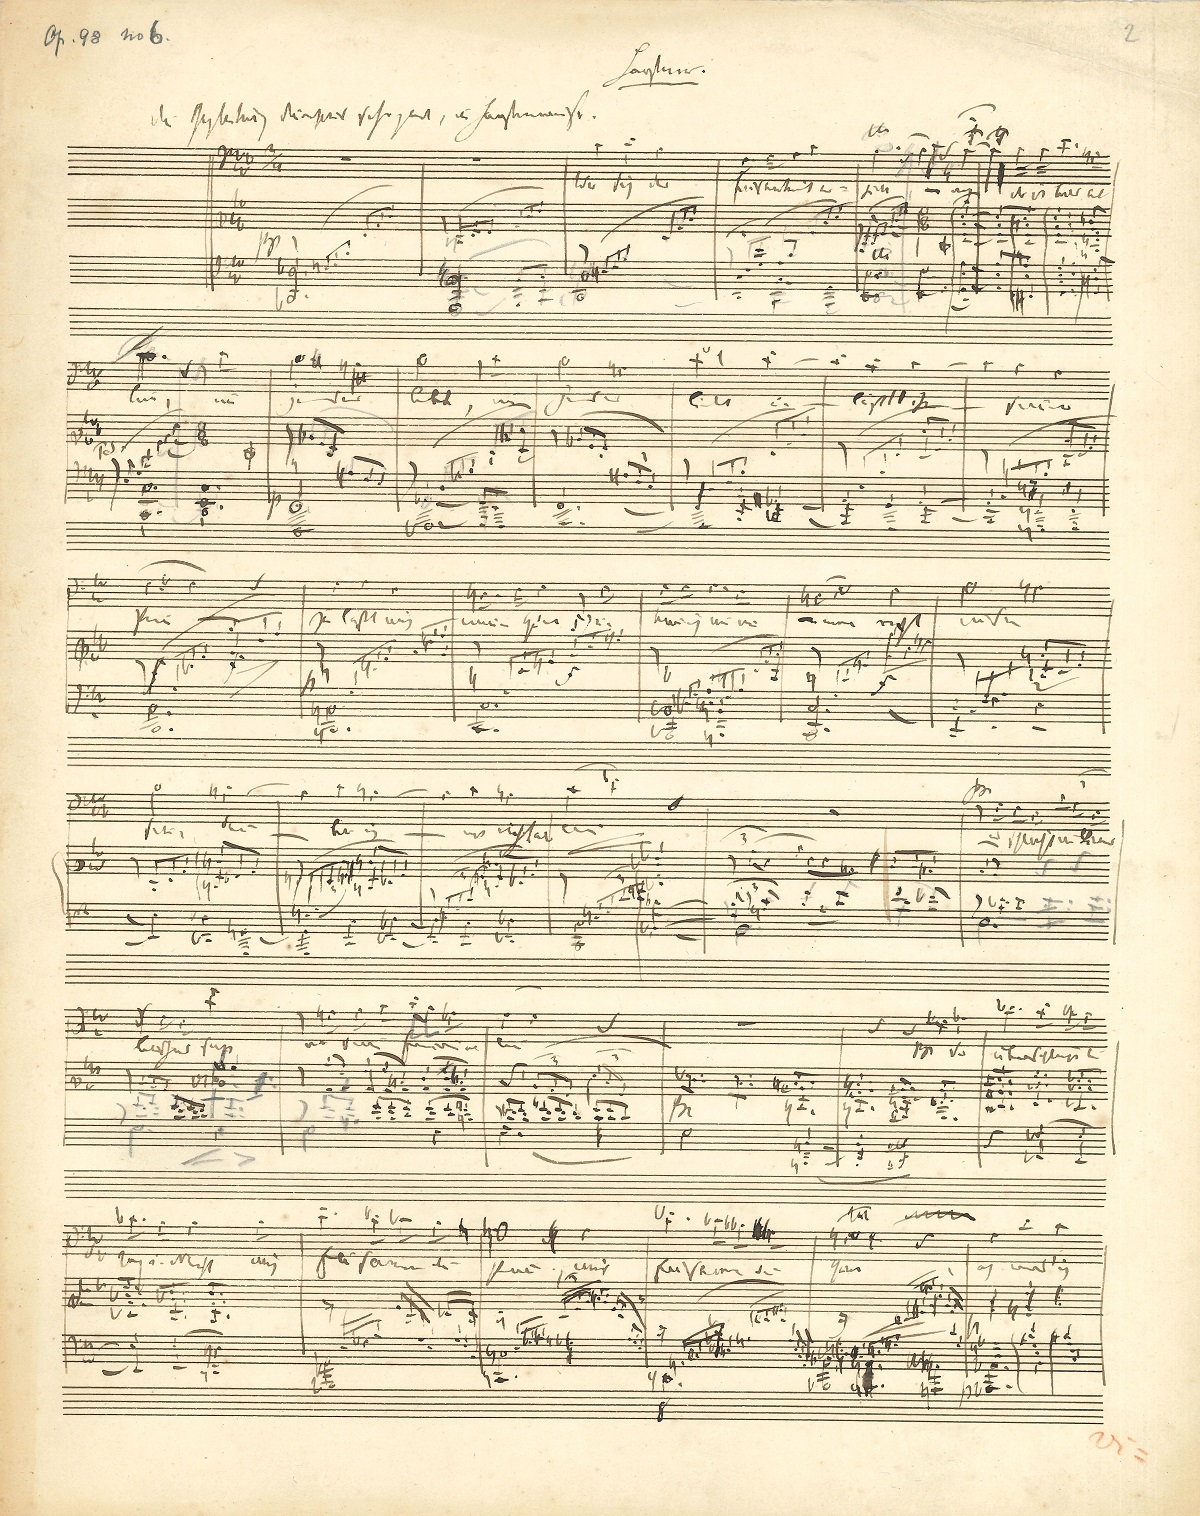 039 Robert SCHUMANN (1810-1856) compositeur allemand Image